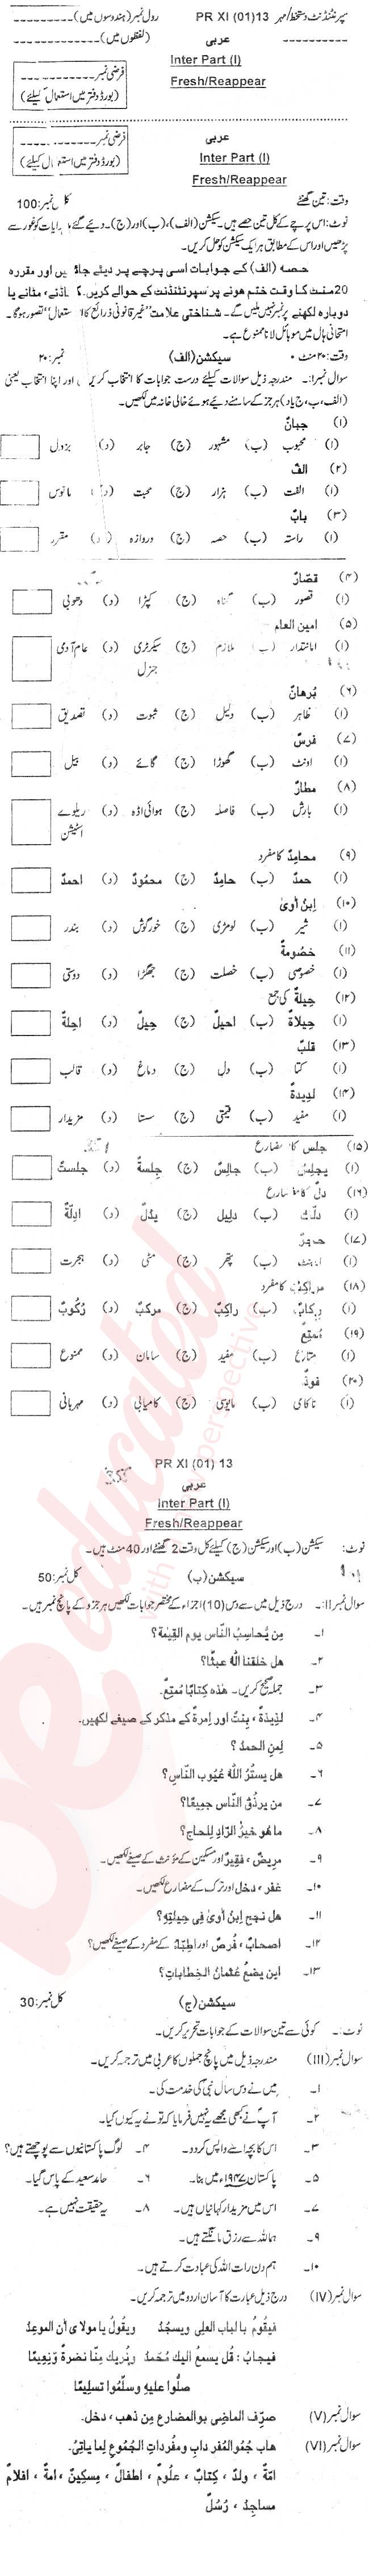 Arabic FA Part 1 Past Paper Group 1 BISE DI Khan 2013